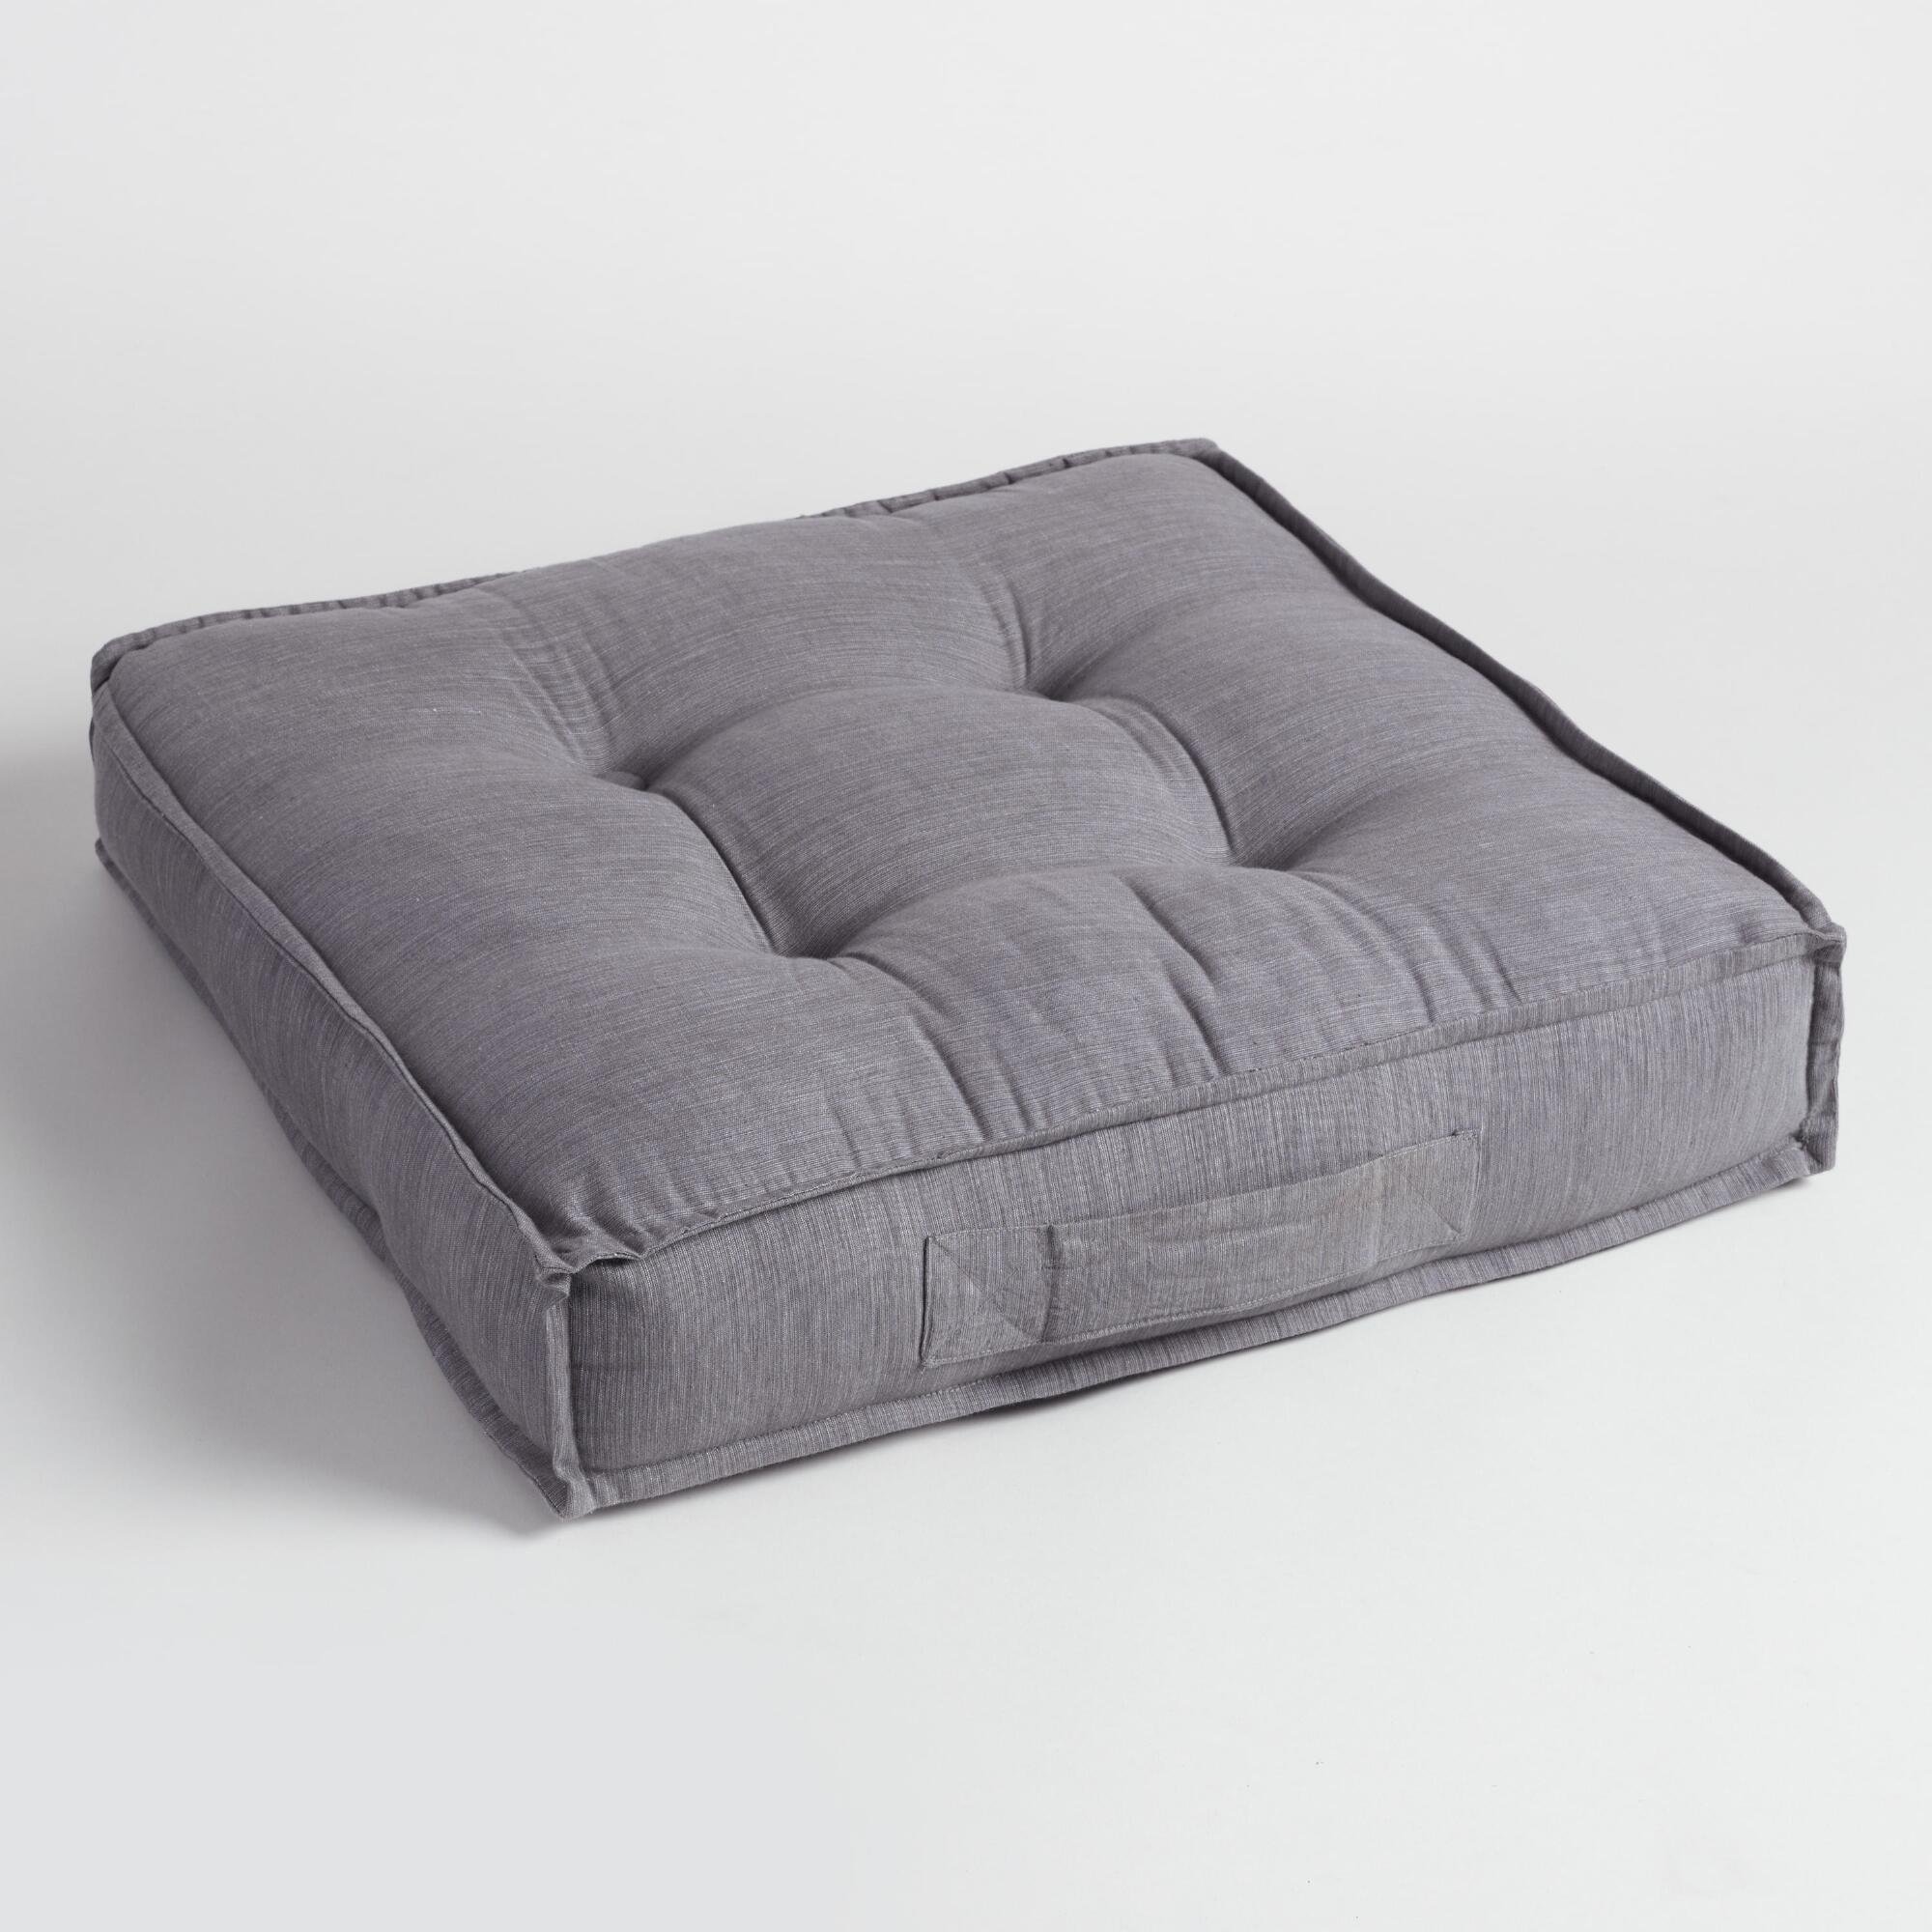 мягкие большие подушки для дивана